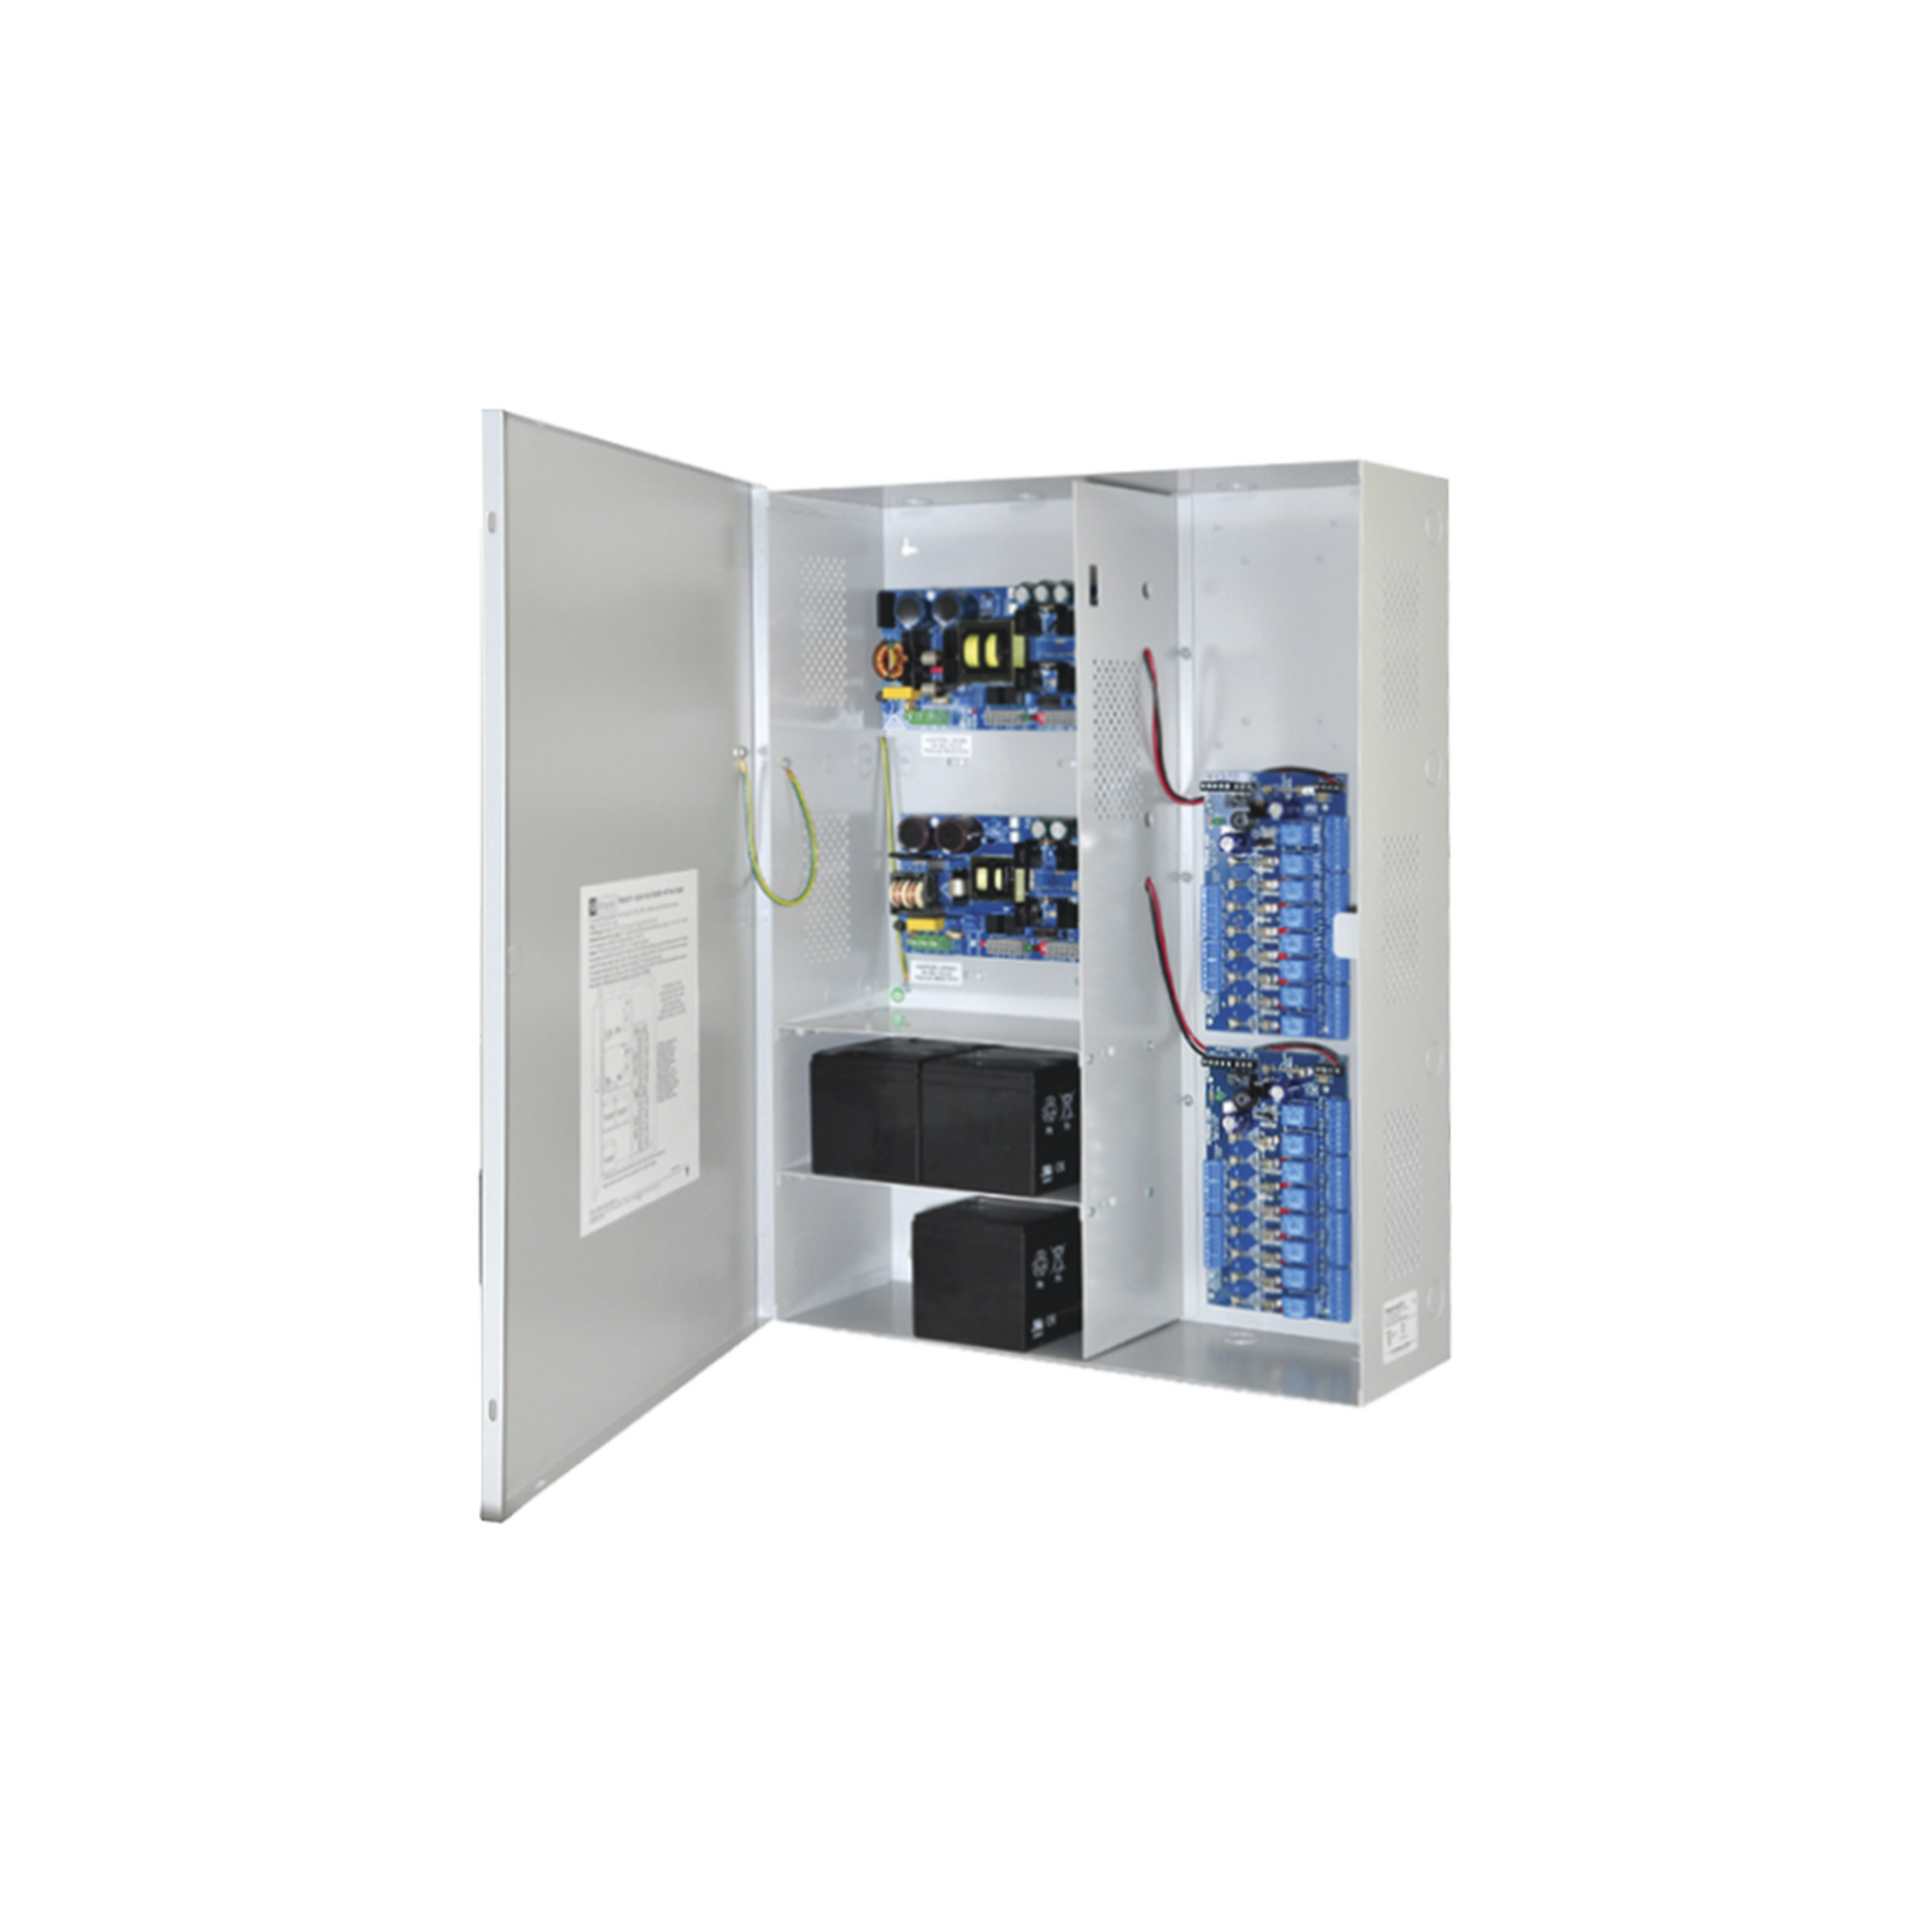 Fuente de poder DUAL ALTRONIX de 12 Vcd @ 9.3 Amper, y 24 Vcd @ 9.6 Amper con 16 salidas, con capacidad de respaldo, para aplicaciones de control de acceso, alarmas, CCTV, con voltaje de entrada en 120 Vca